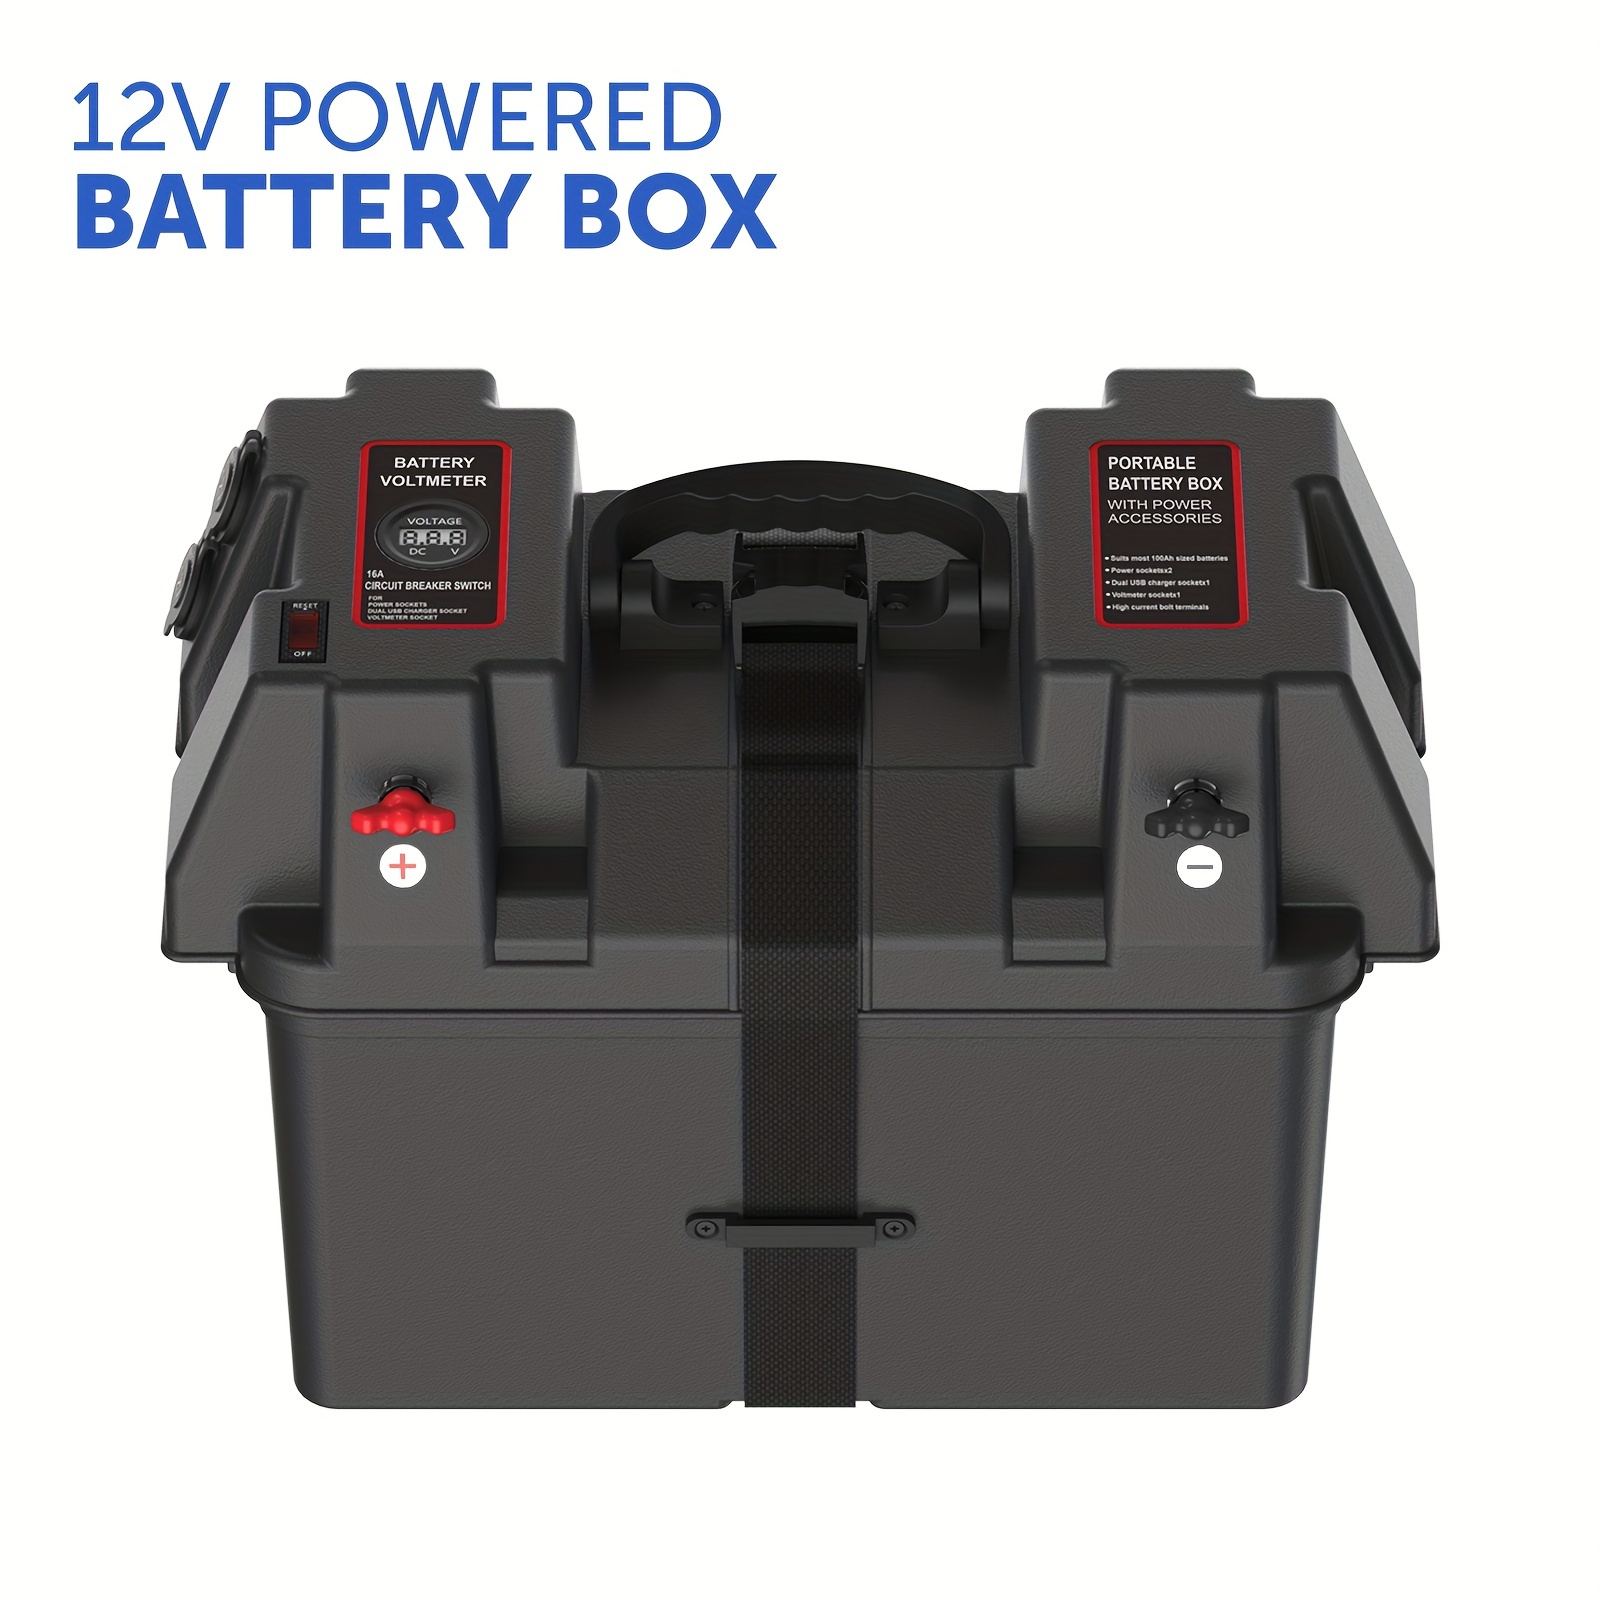 Boîte de batterie 12Vdc avec voltmètre, prise de voiture 12Vdc et doub –  Creation et Design Electrique Inc